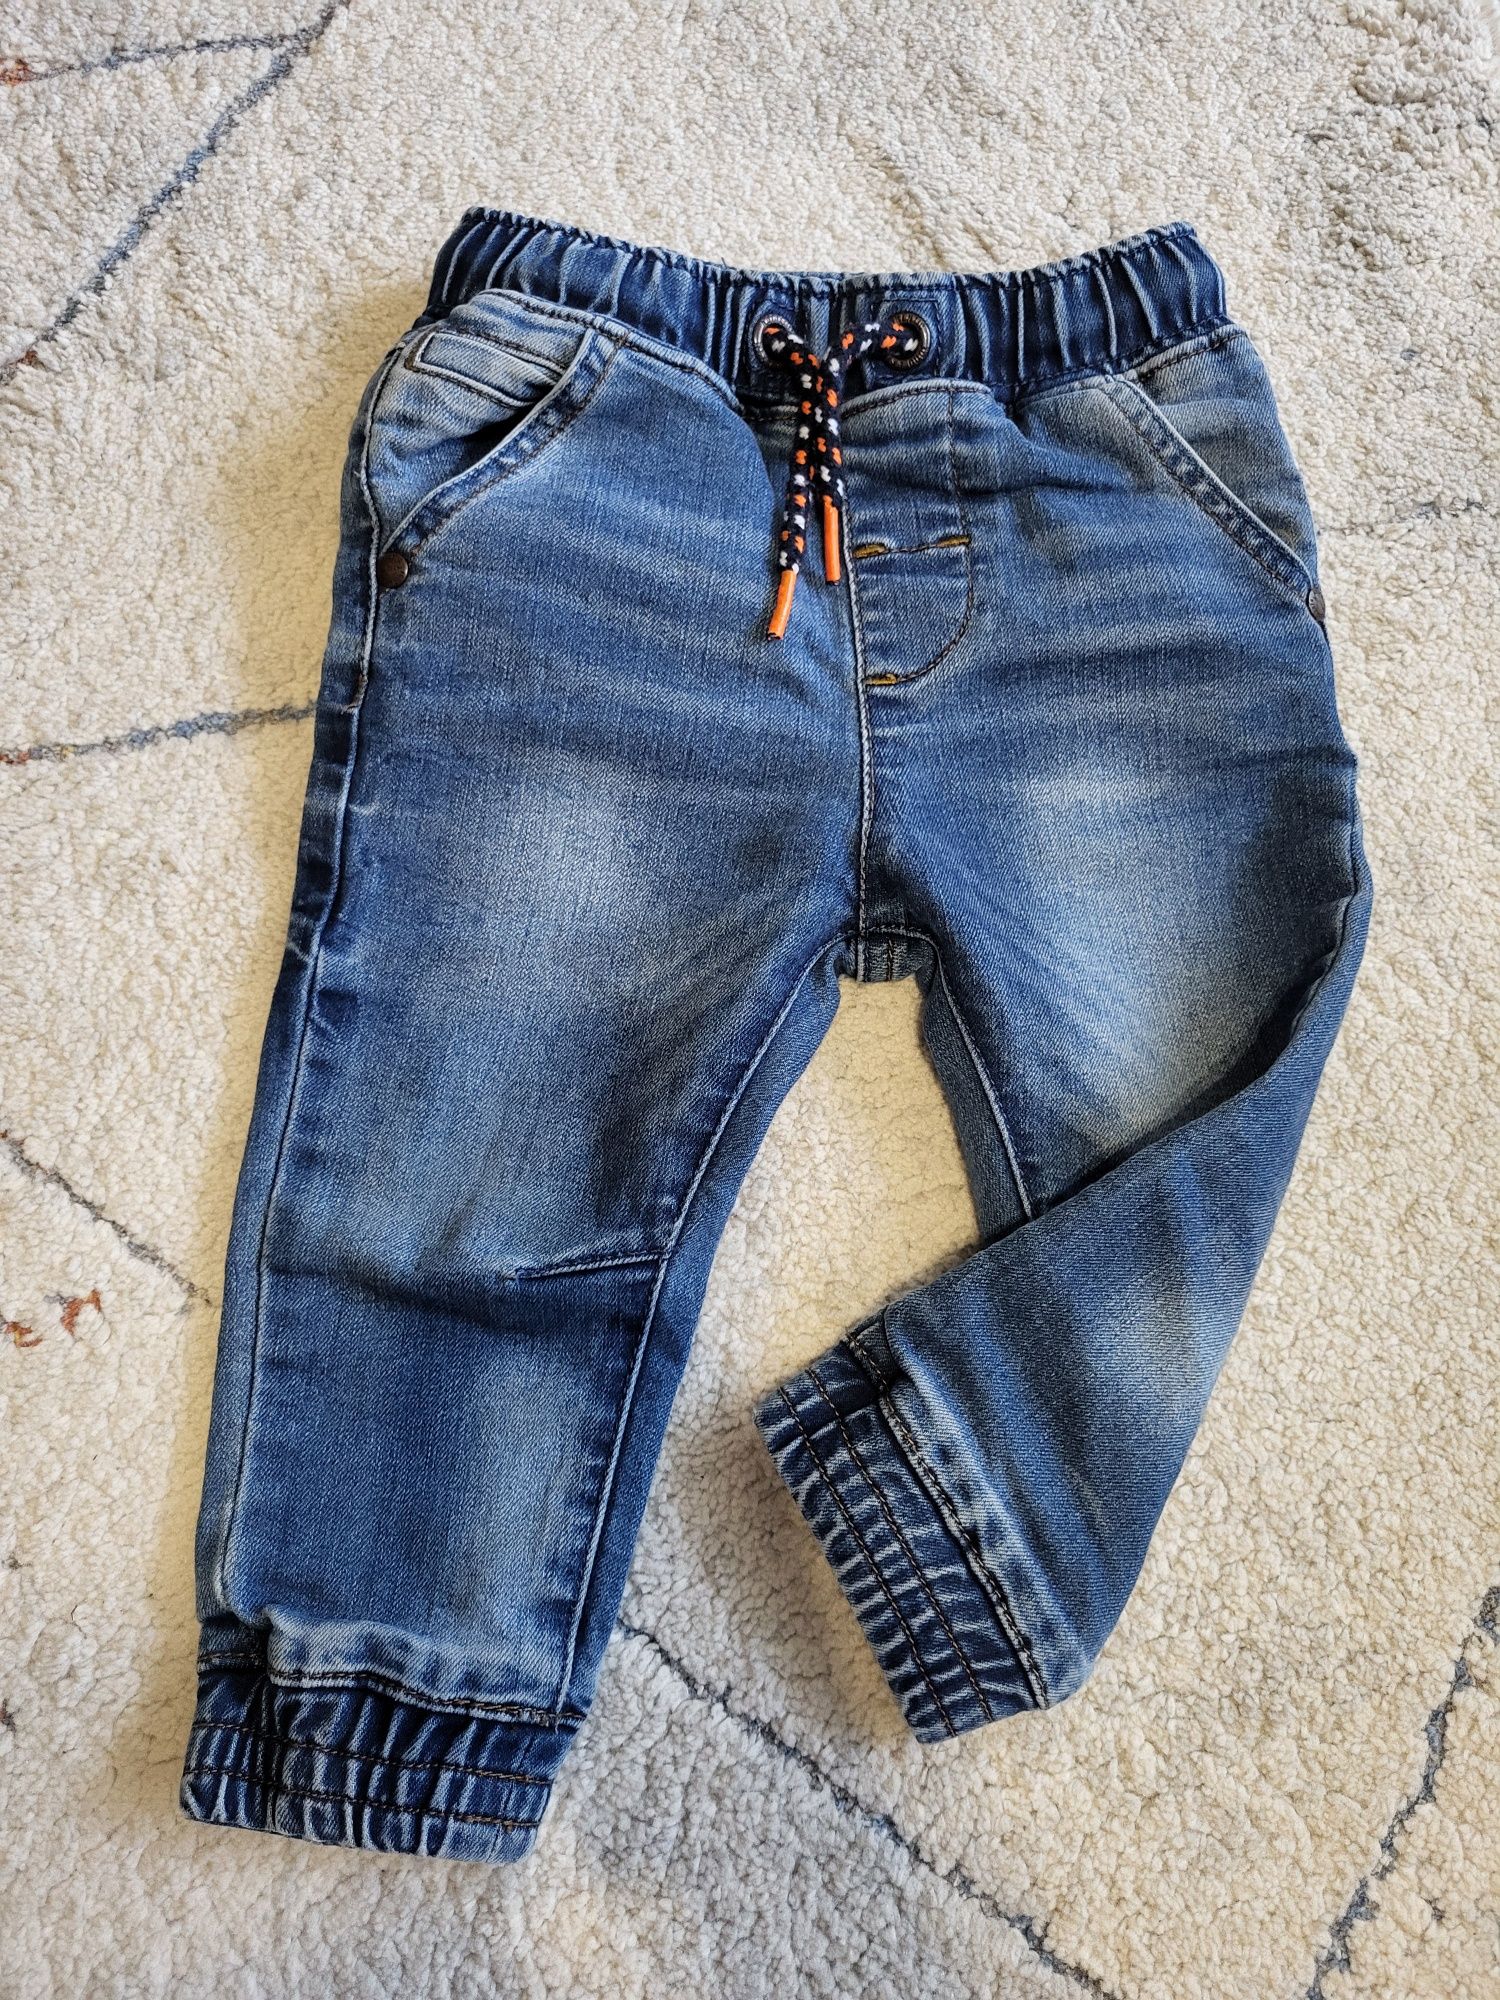 Spodnie dżinsowe chłopięce jeansy 9-12 next